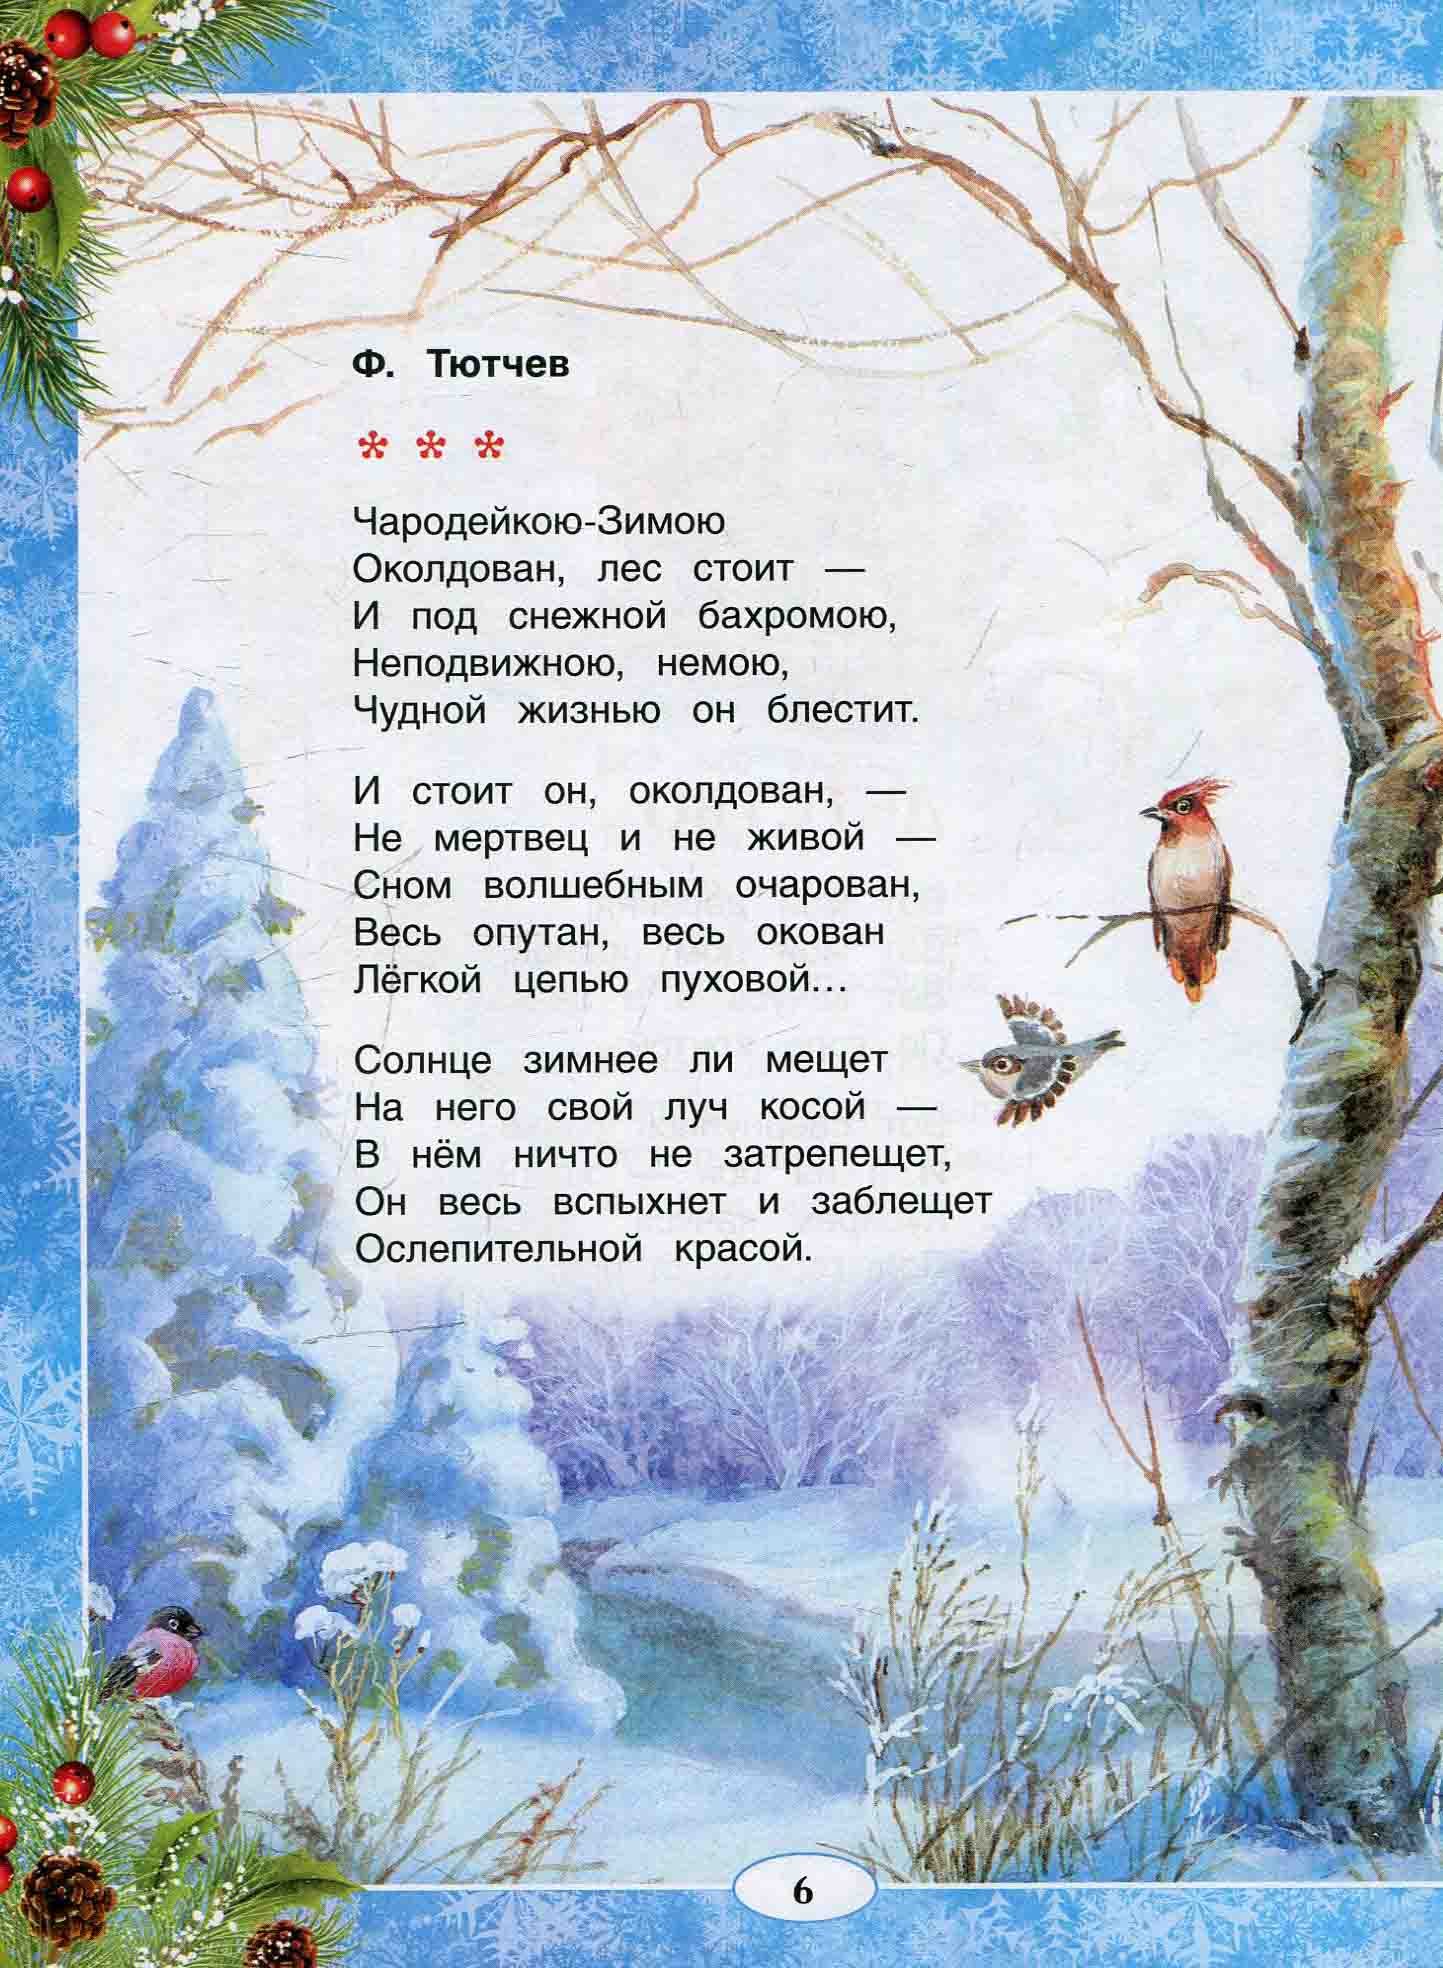 Стихи тютчева о зиме - читать текст стихов | зима недаром злится